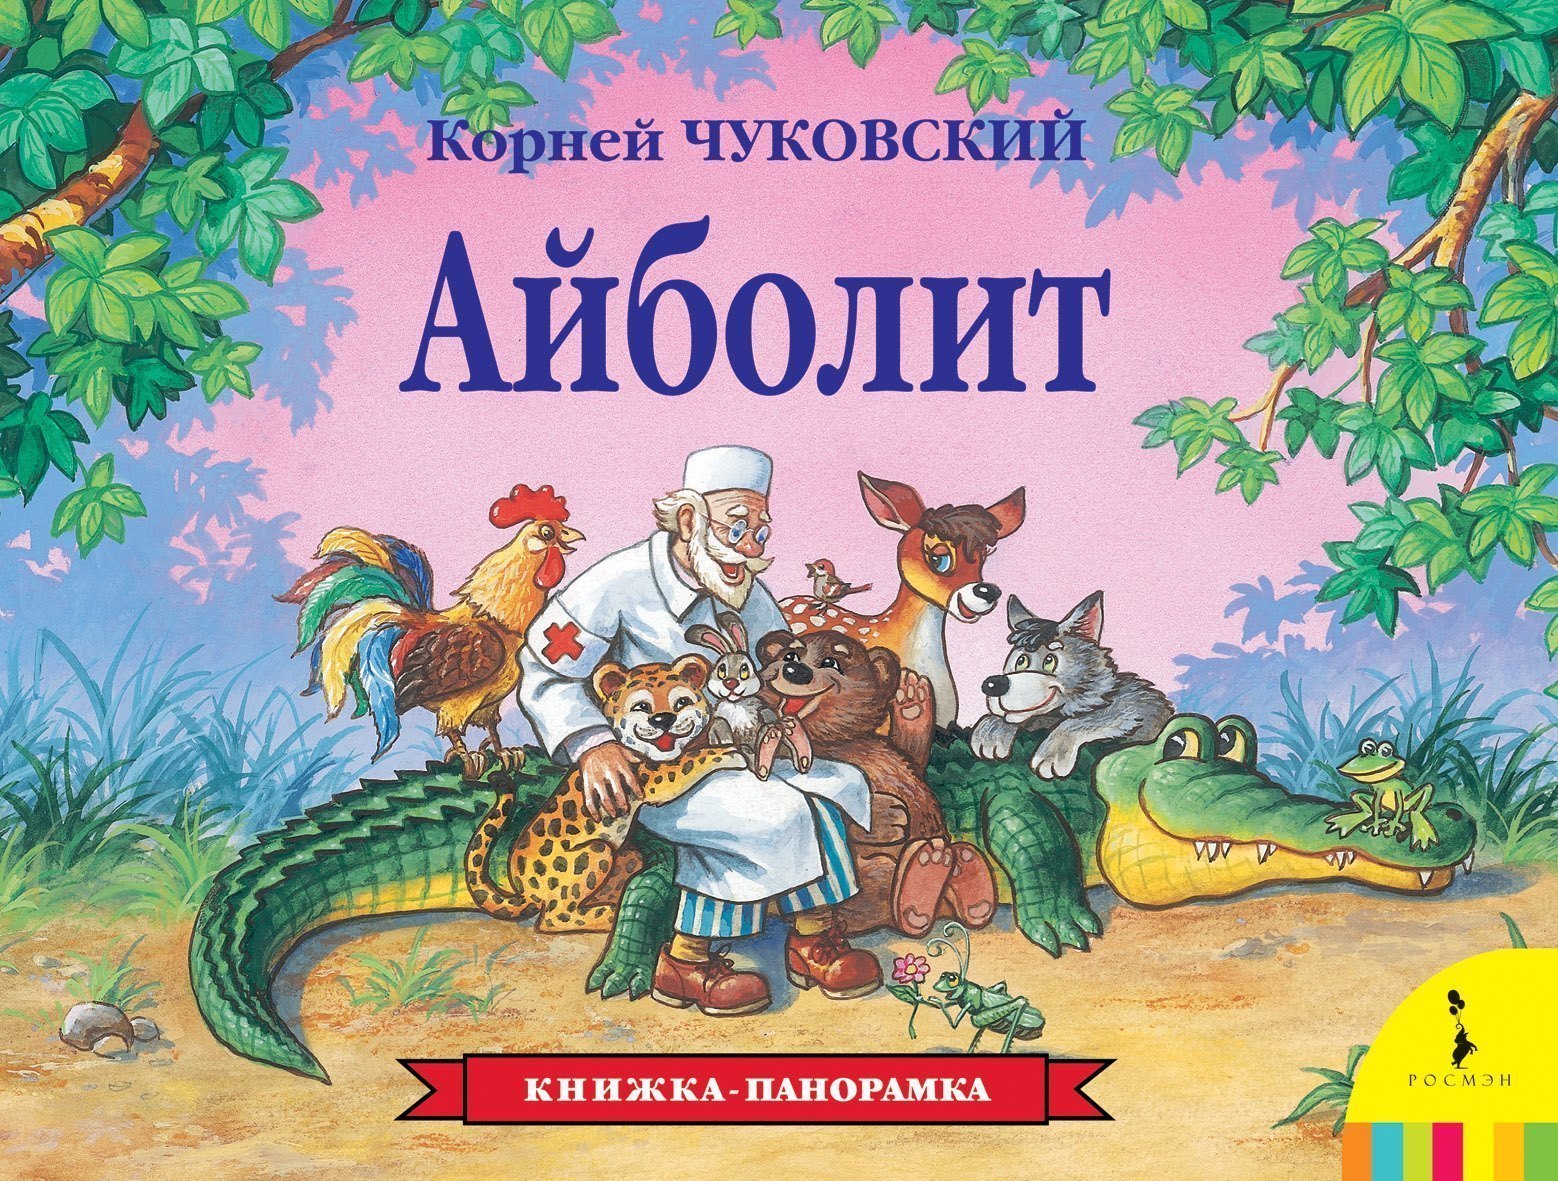 Книжка-панорамка Айболит Росмэн